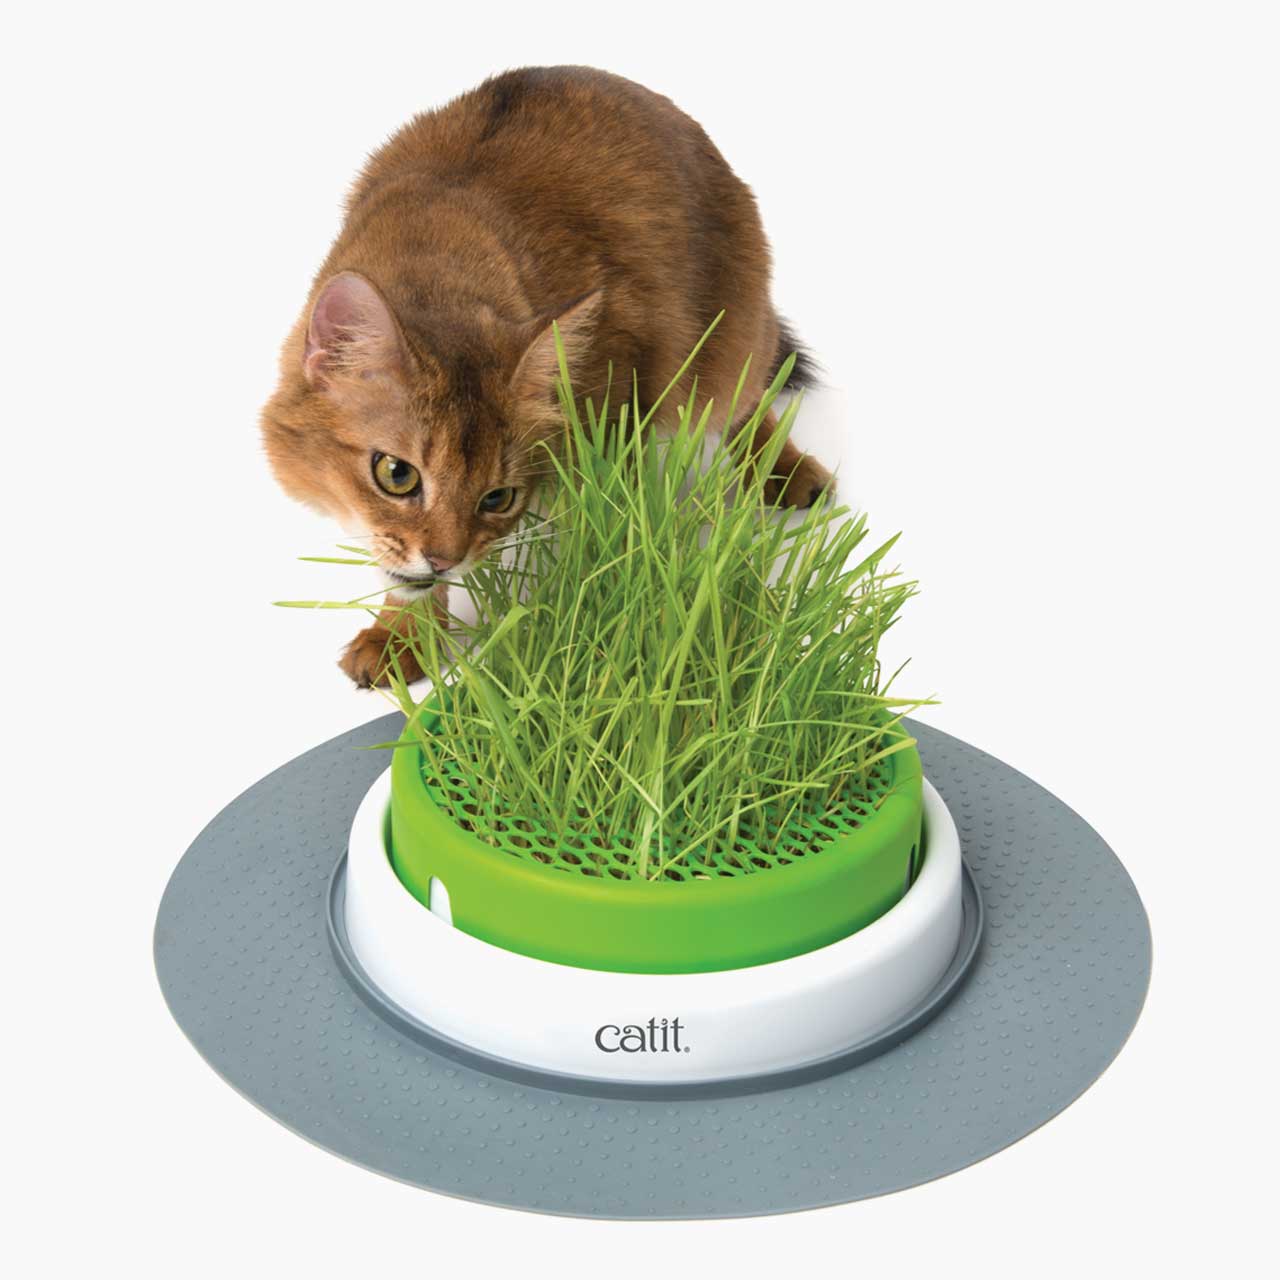 Eine Katze kaut an Gras aus dem Grastopf